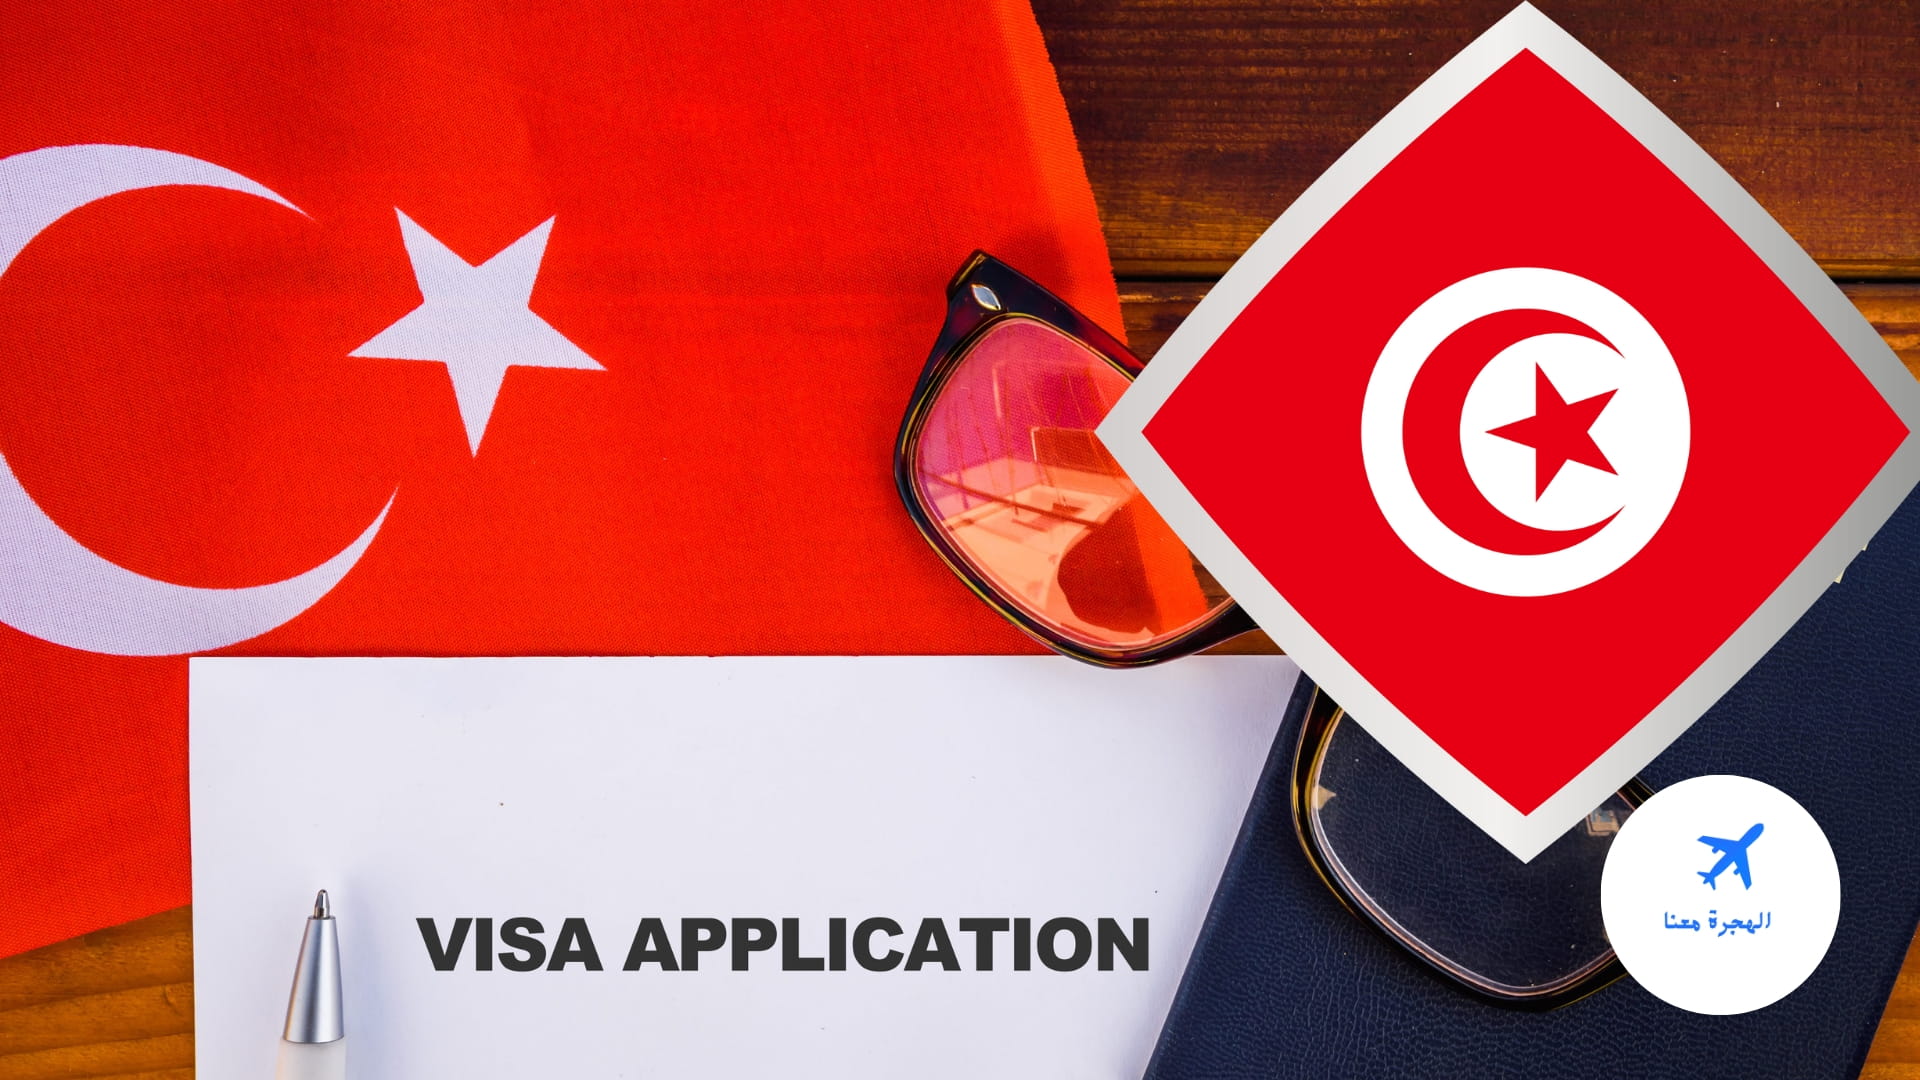 سعر تذكرة السفر من تونس إلى تركيا بالدينار التونسي